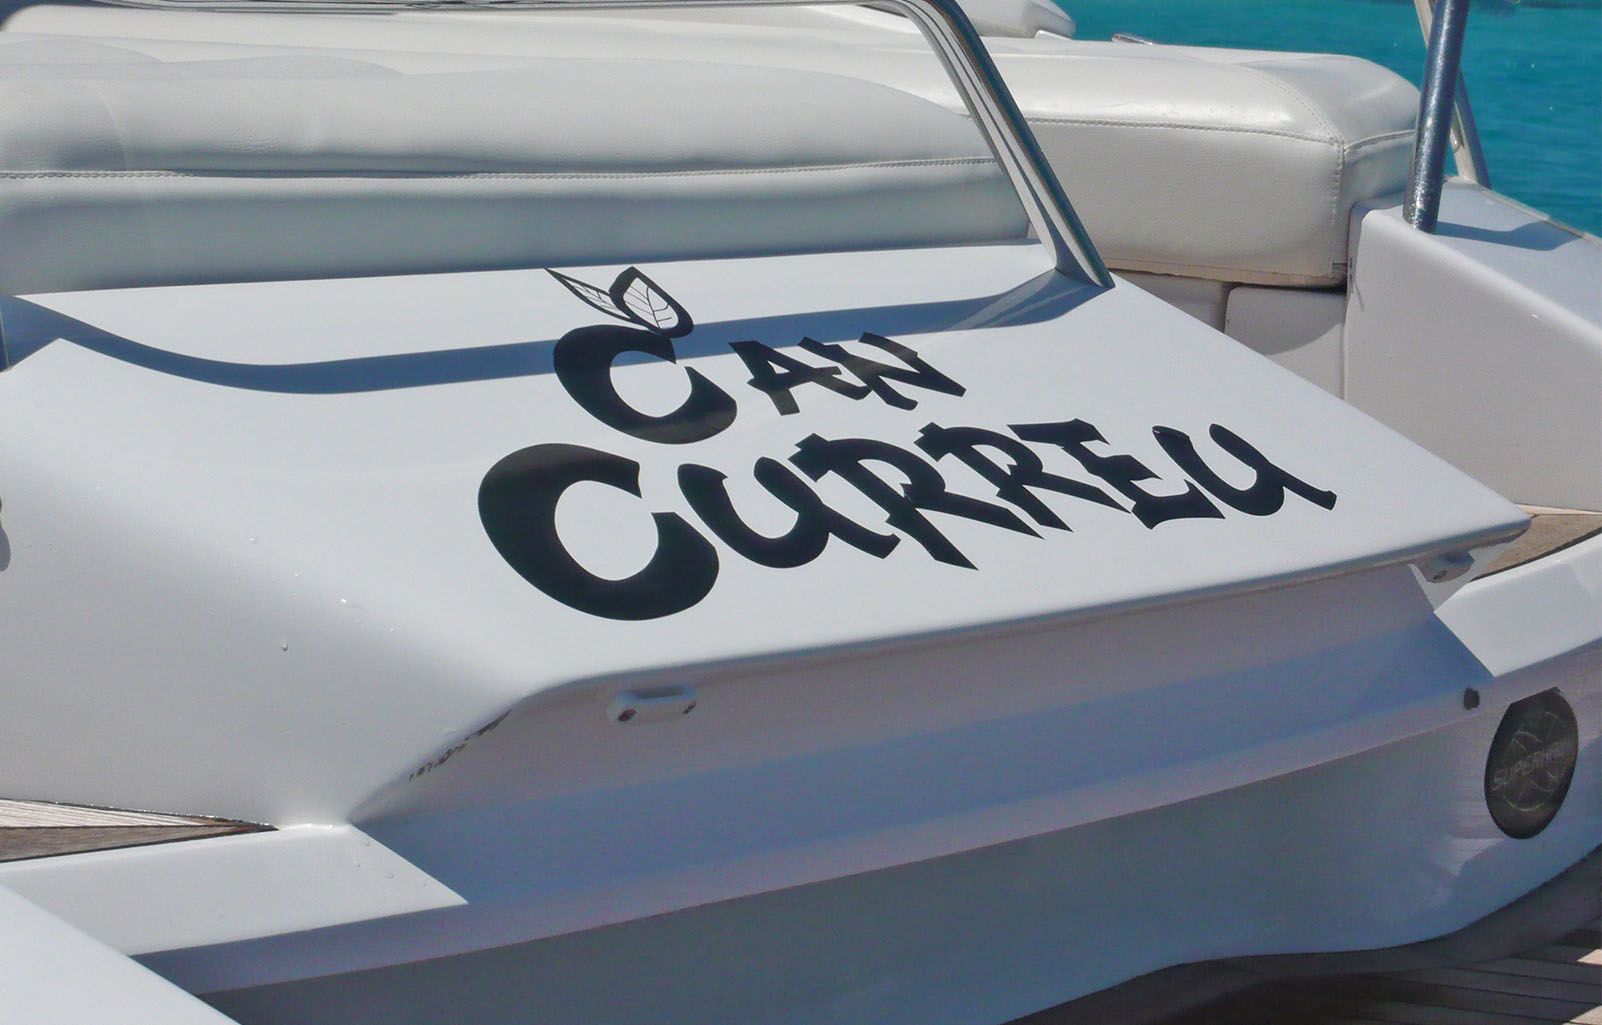 Sunseeker Superhawk Boot für Charter in Ibiza